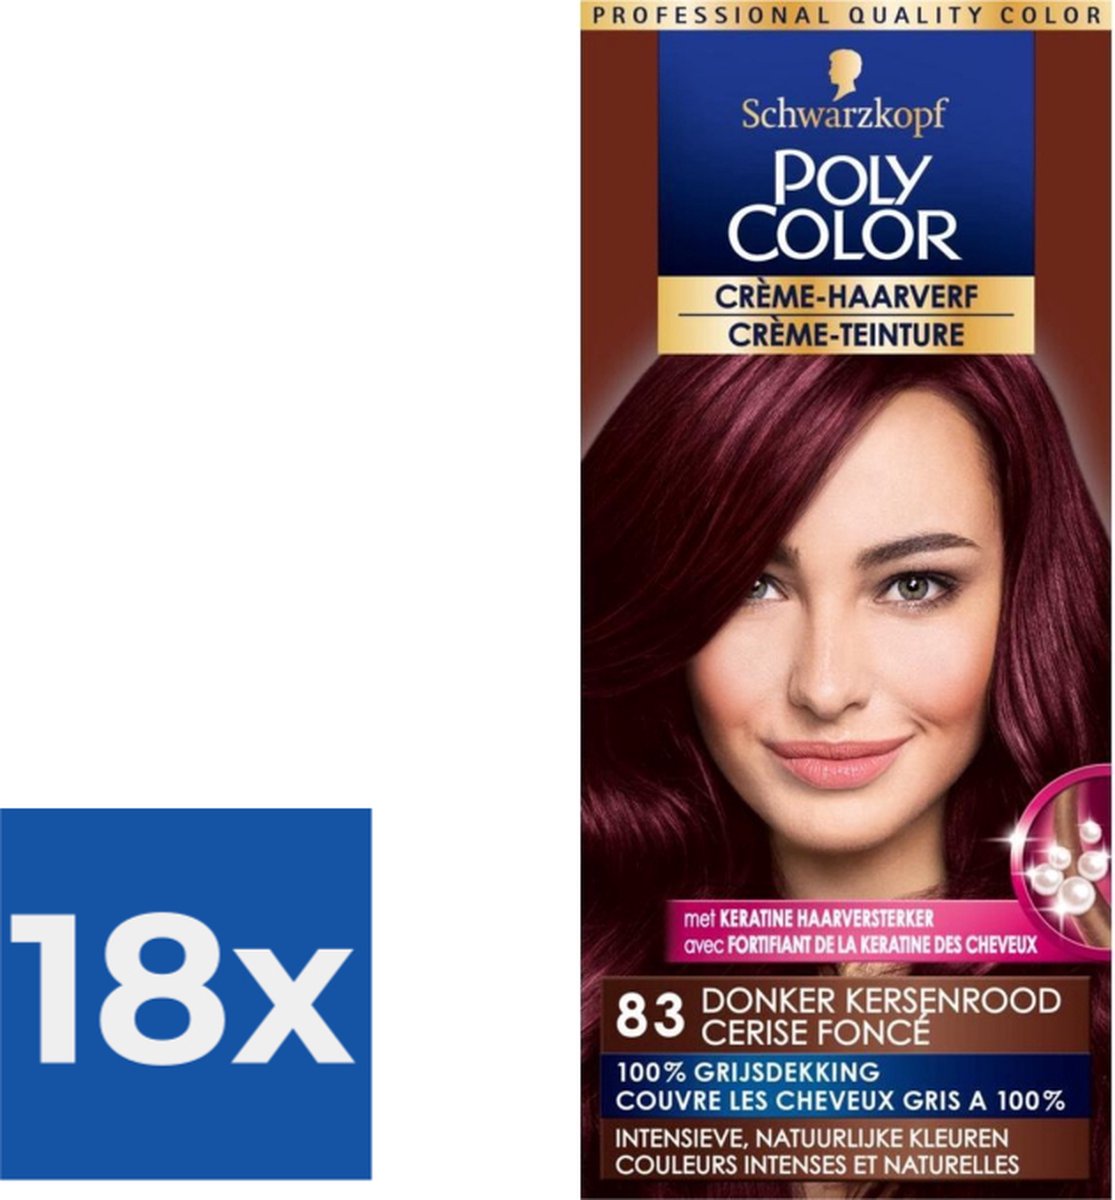 Poly Color Creme Haarverf 83 - Donker Kersenrood - 1 stuk - Voordeelverpakking 18 stuks